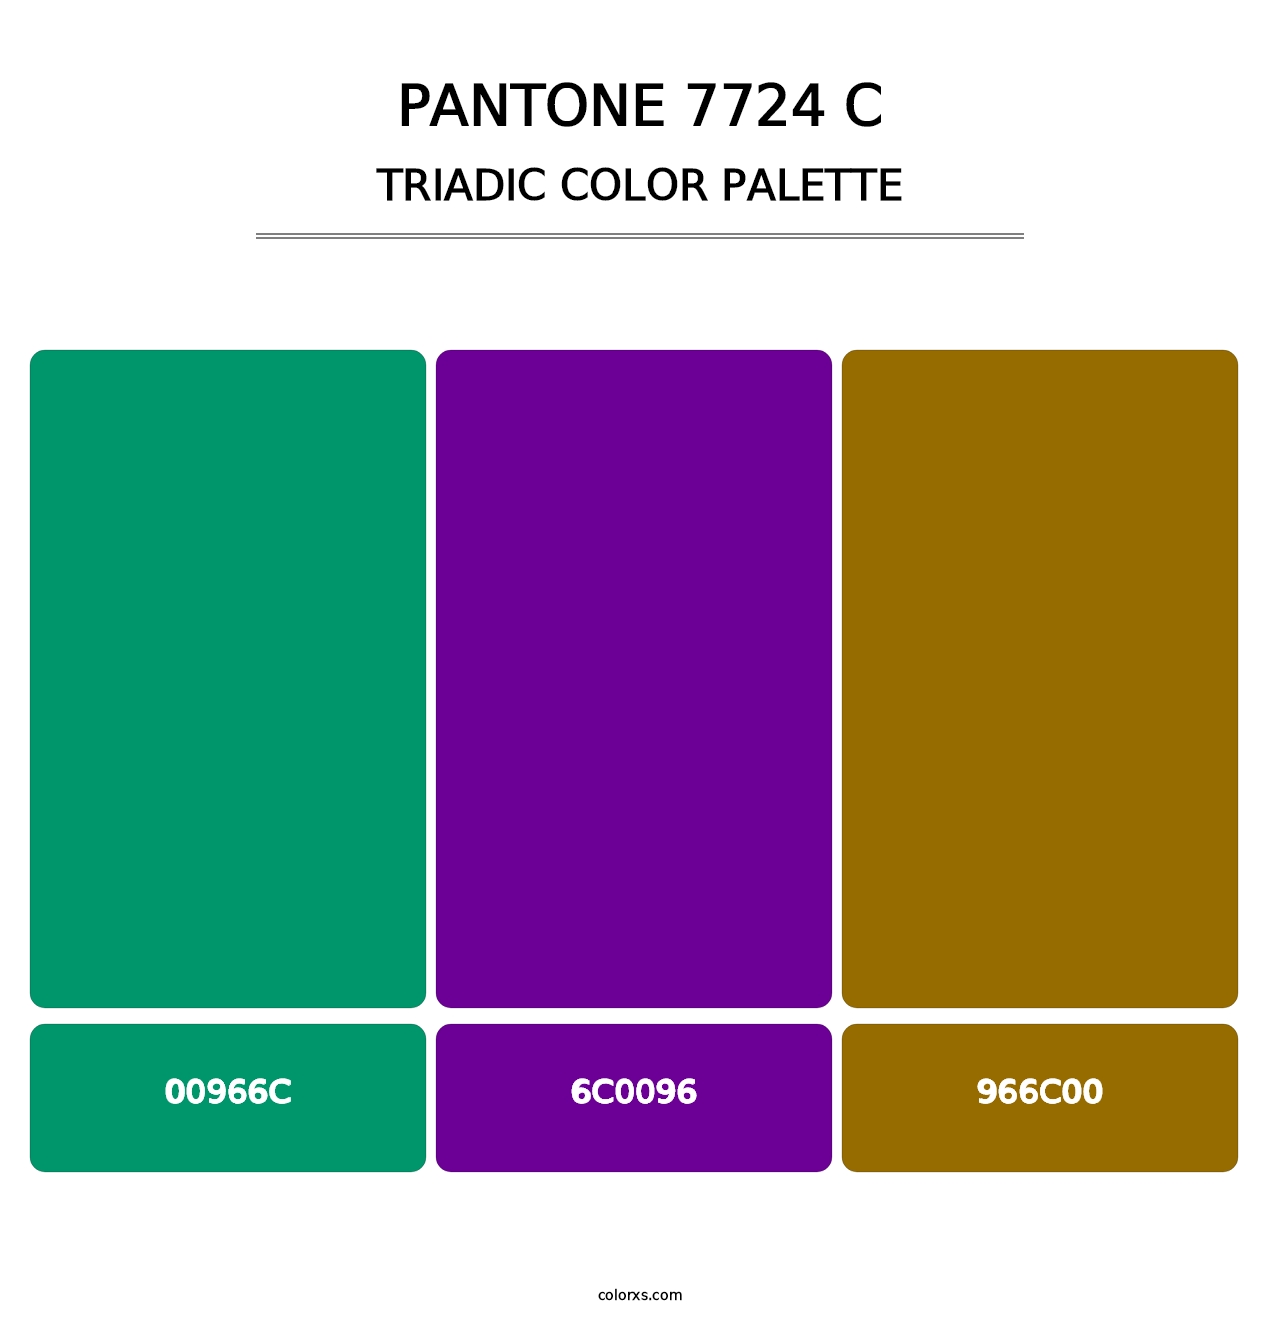 PANTONE 7724 C - Triadic Color Palette